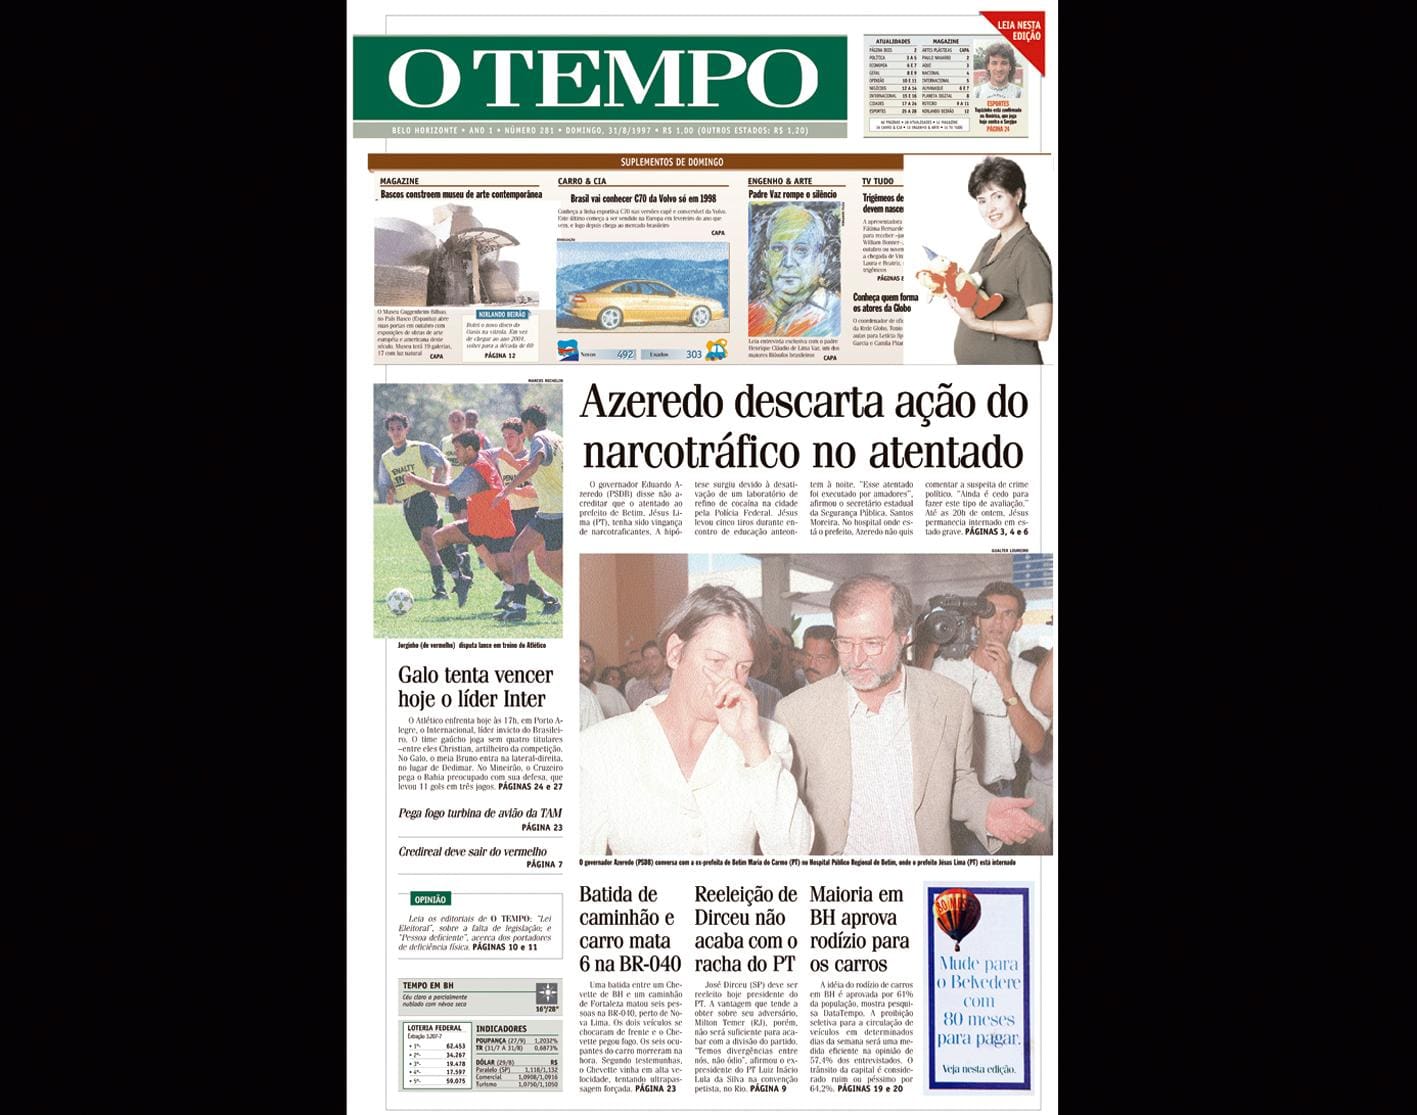 Capa do jornal O TEMPO no dia 31.8.1997; resgate do acervo marca as comemorações dos 25 anos da publicação